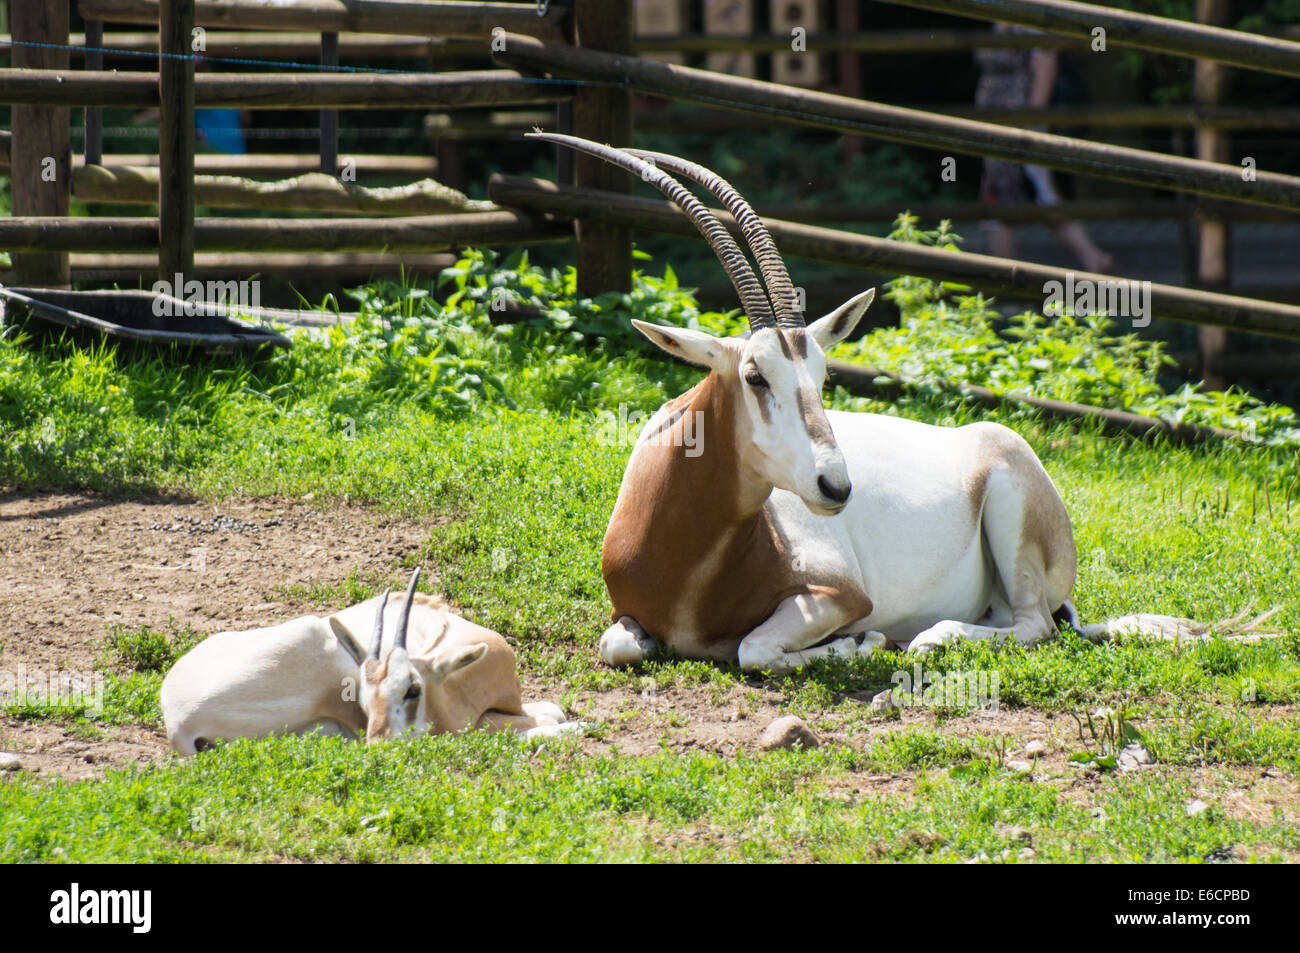 Scimitar horned oryx (Oryx dammah) avec jeune veau au Zoo, Plock Pologne Banque D'Images